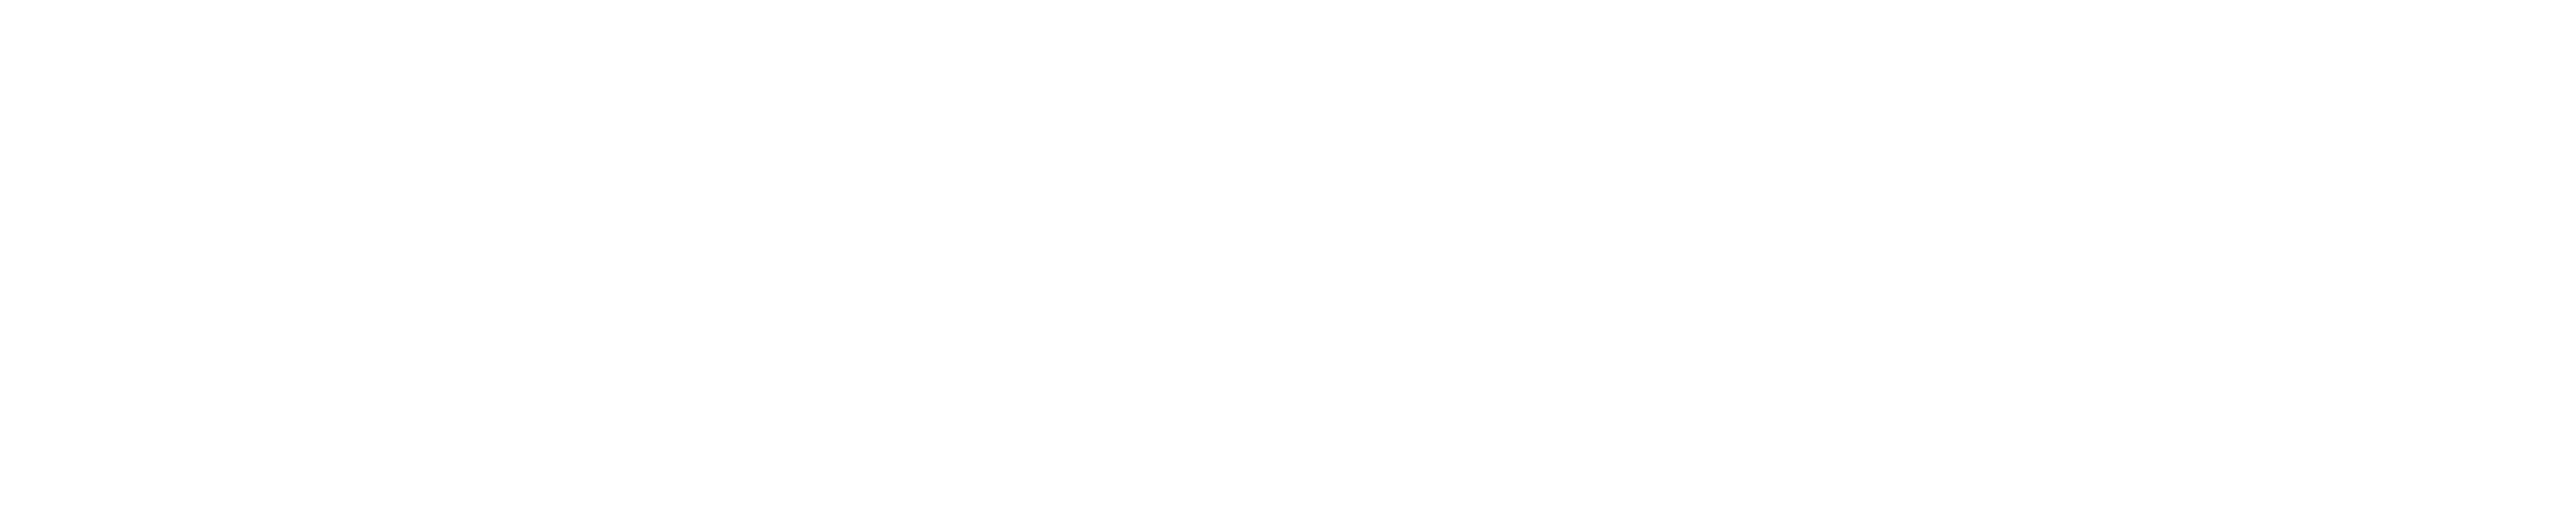 DeepCatch logo